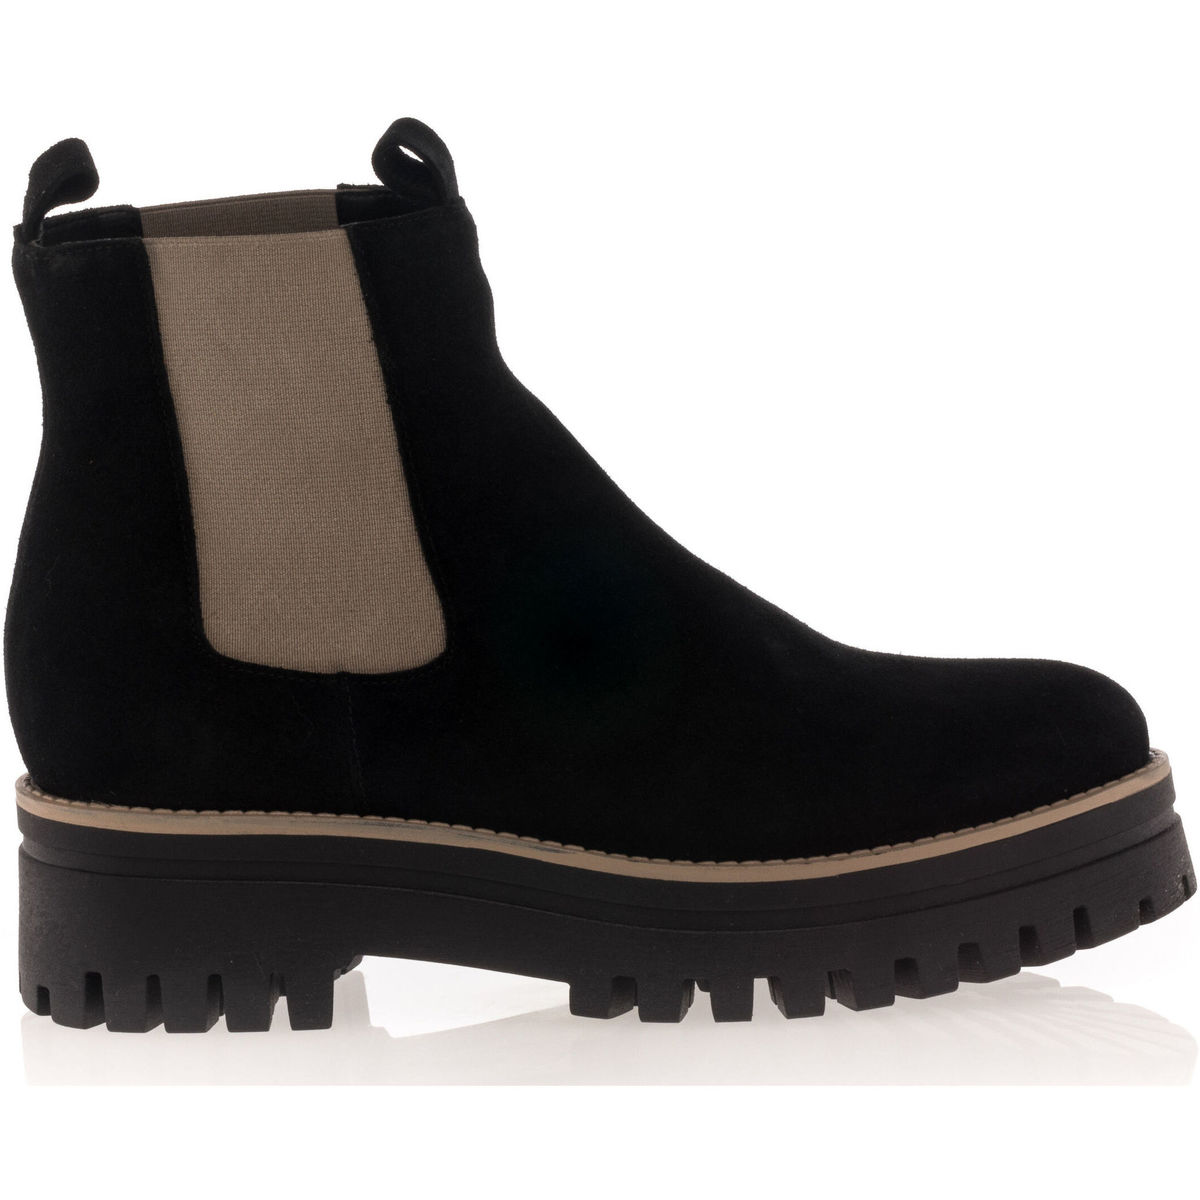 Chaussures Femme Женские ботинки в стиле prada boots zip pocket black Boots / bottines Femme Noir Noir